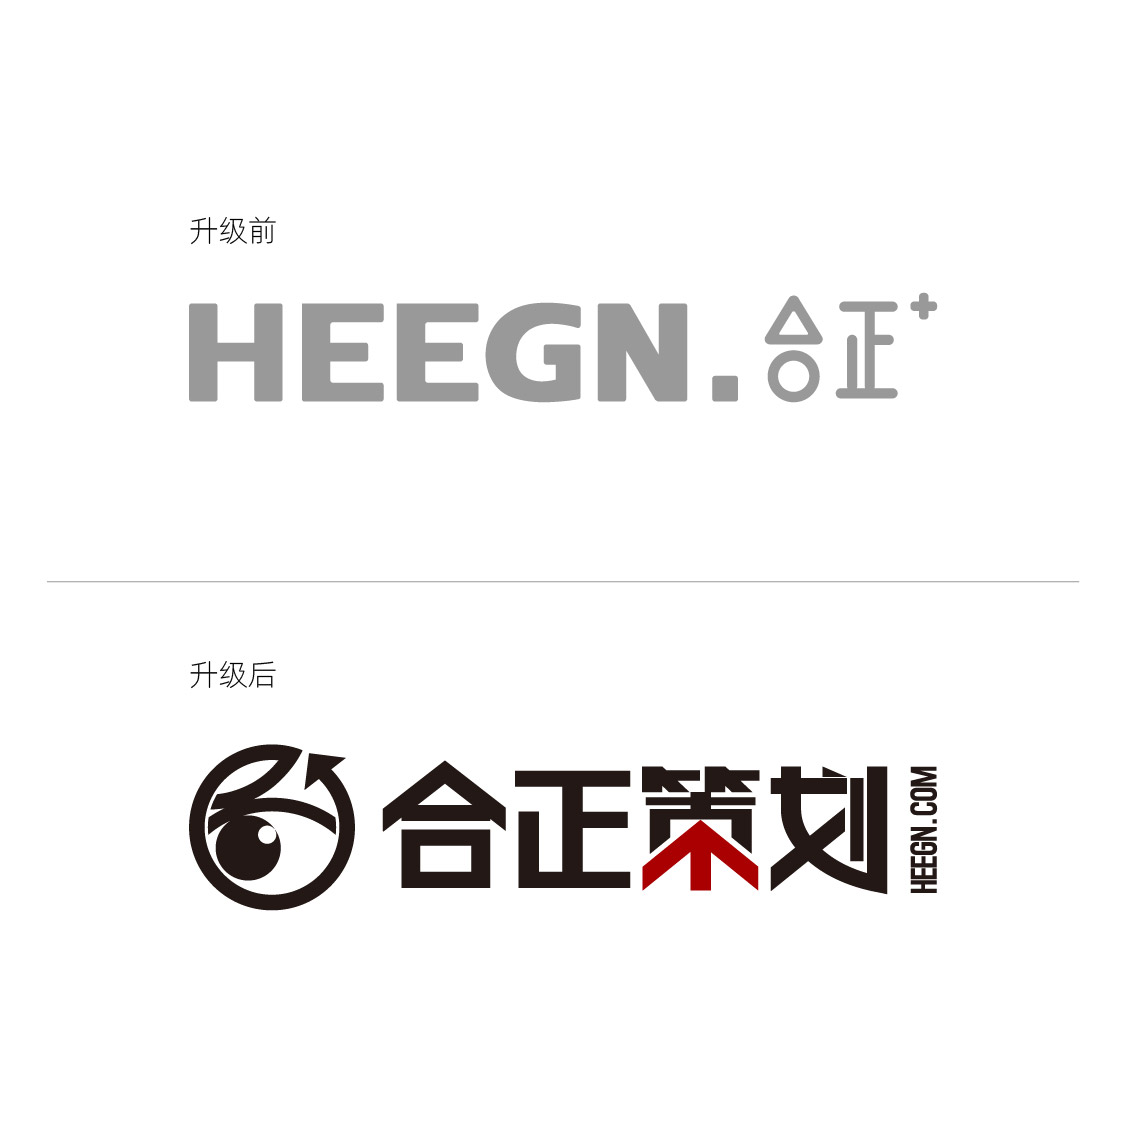 企業logo升級策劃,品牌全案策劃包裝,鄭州品牌設計